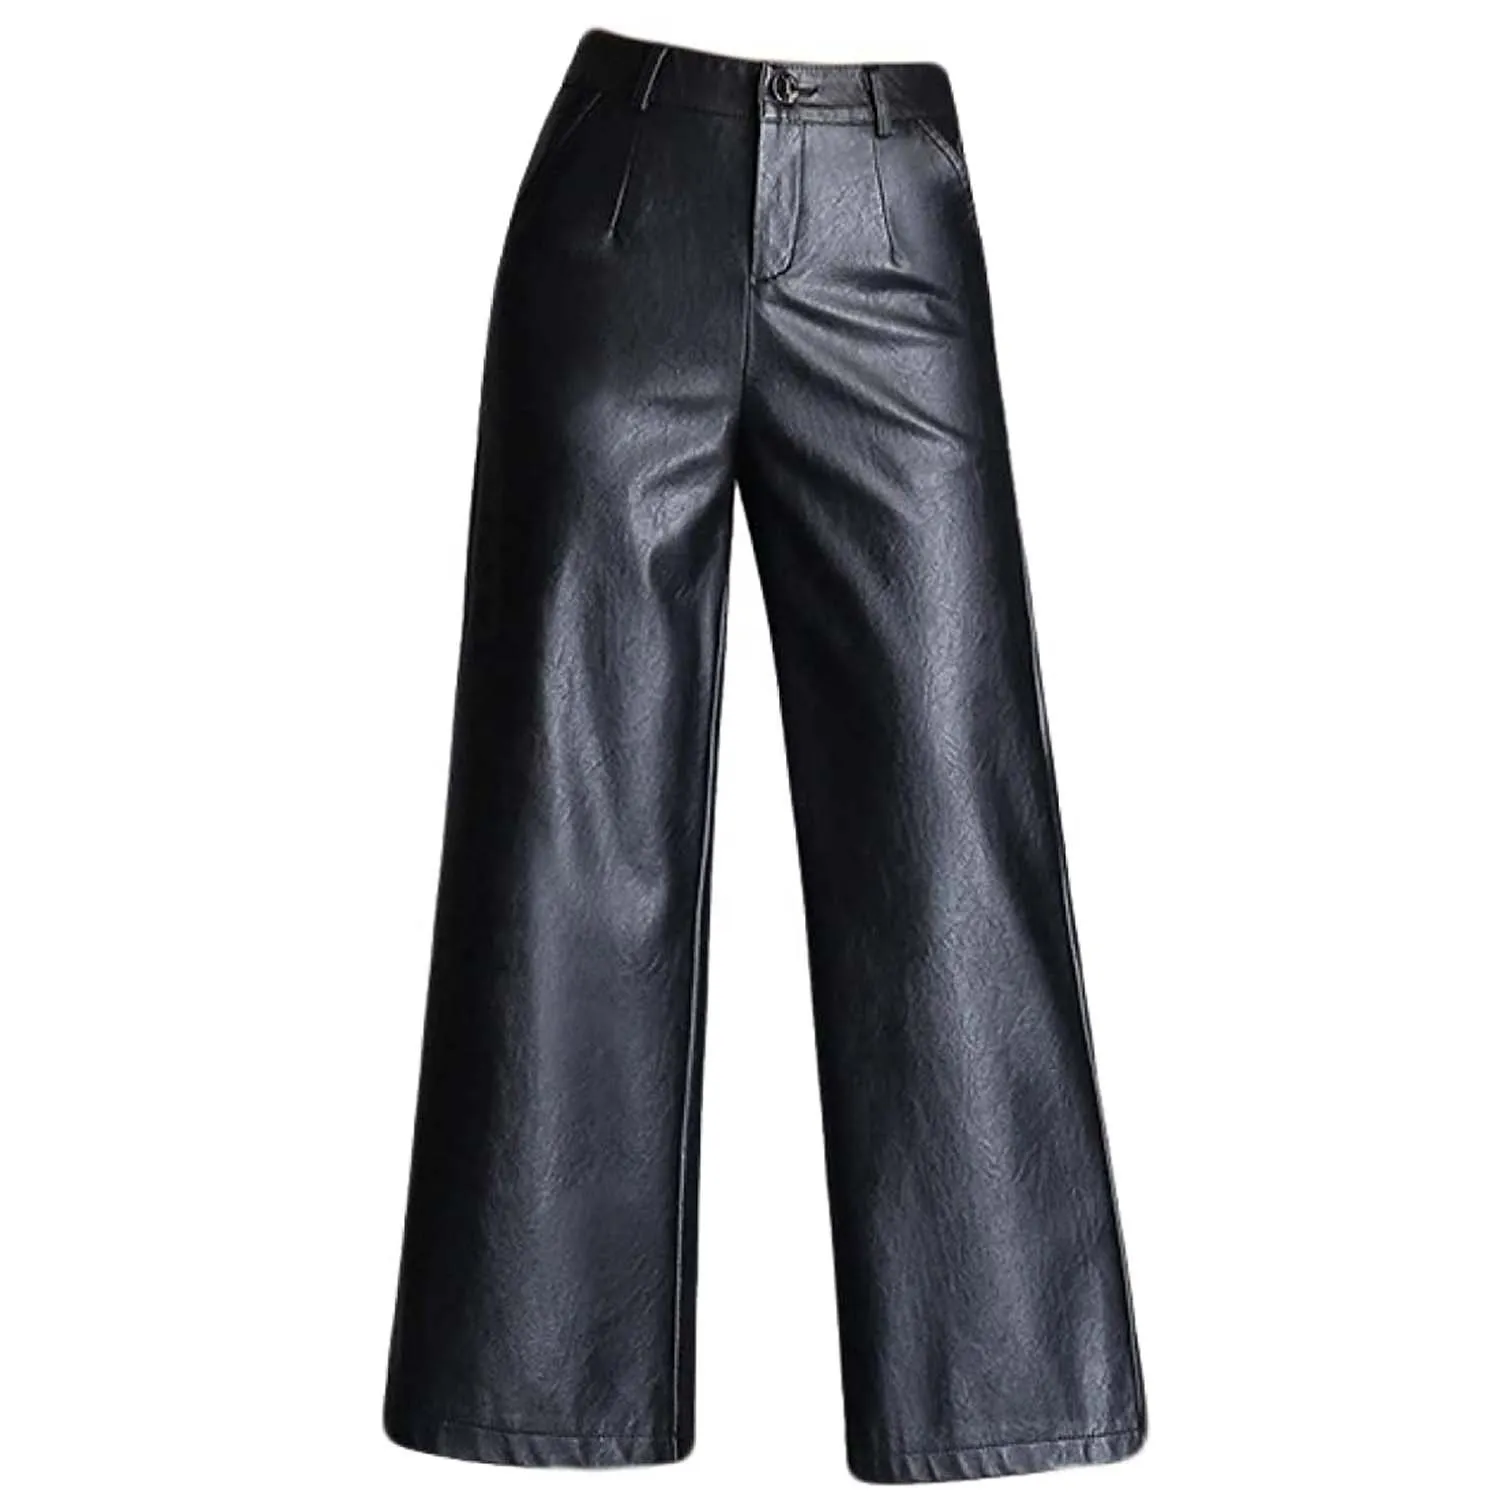 Nuevo estilo streetwear PU Pantalones Otoño Invierno Ropa de moda Cintura alta Grueso Sólido Negro Pantalones de cuero Mujeres tasa al por mayor